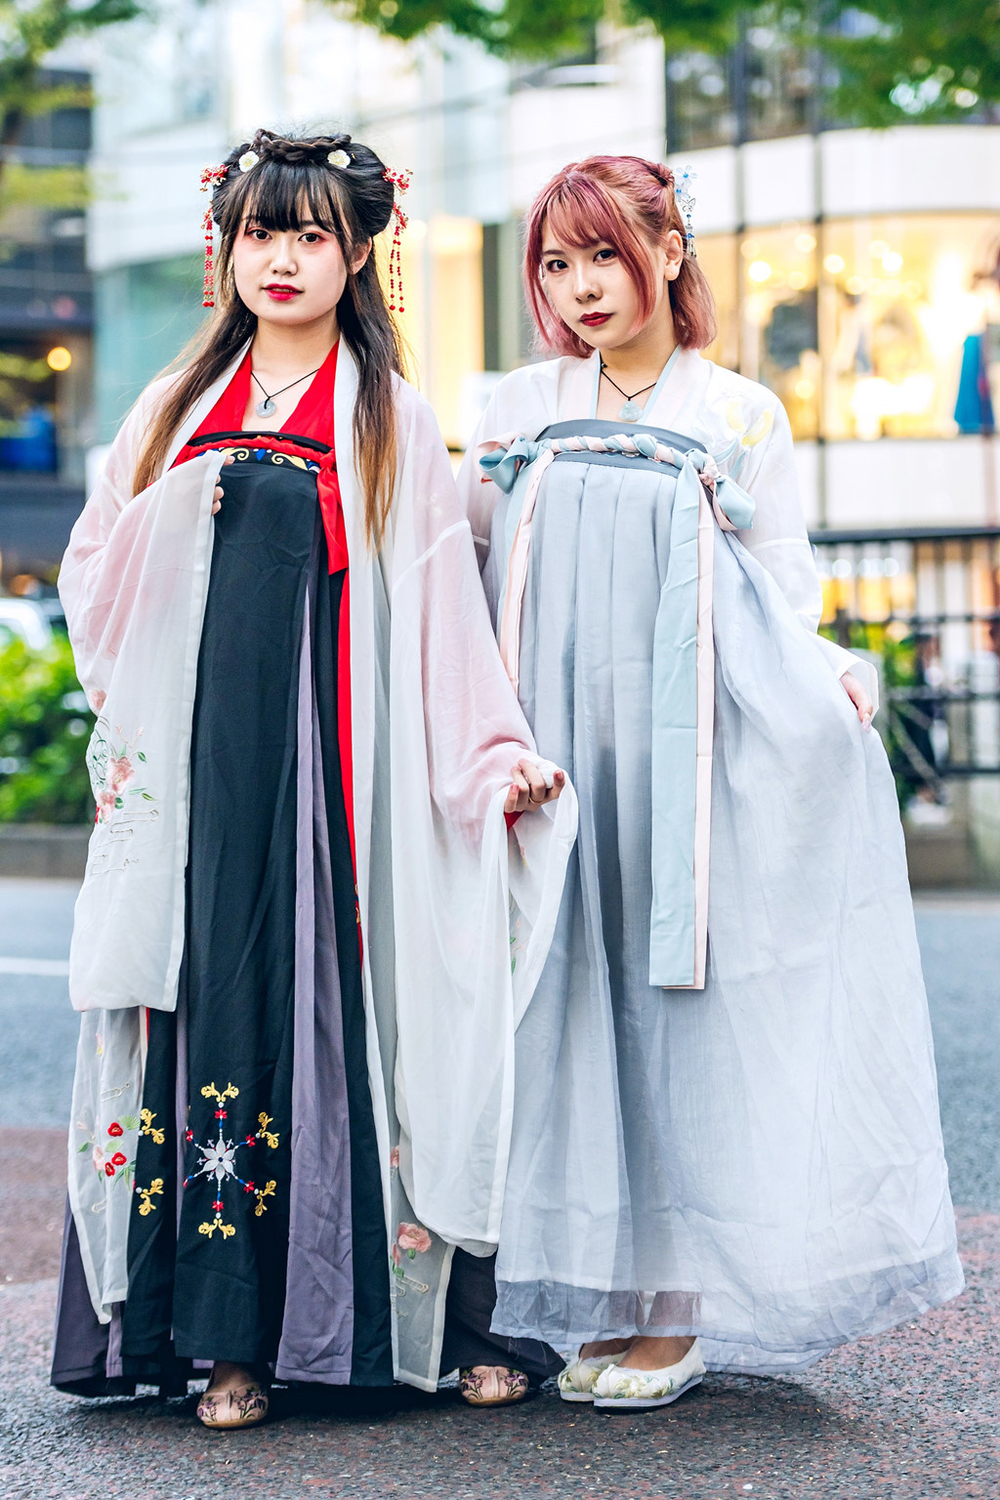  Trang phục cổ trang cũng được 2 bạn nữ này muốn mang đế thế giới nền văn hoá dân tộc.